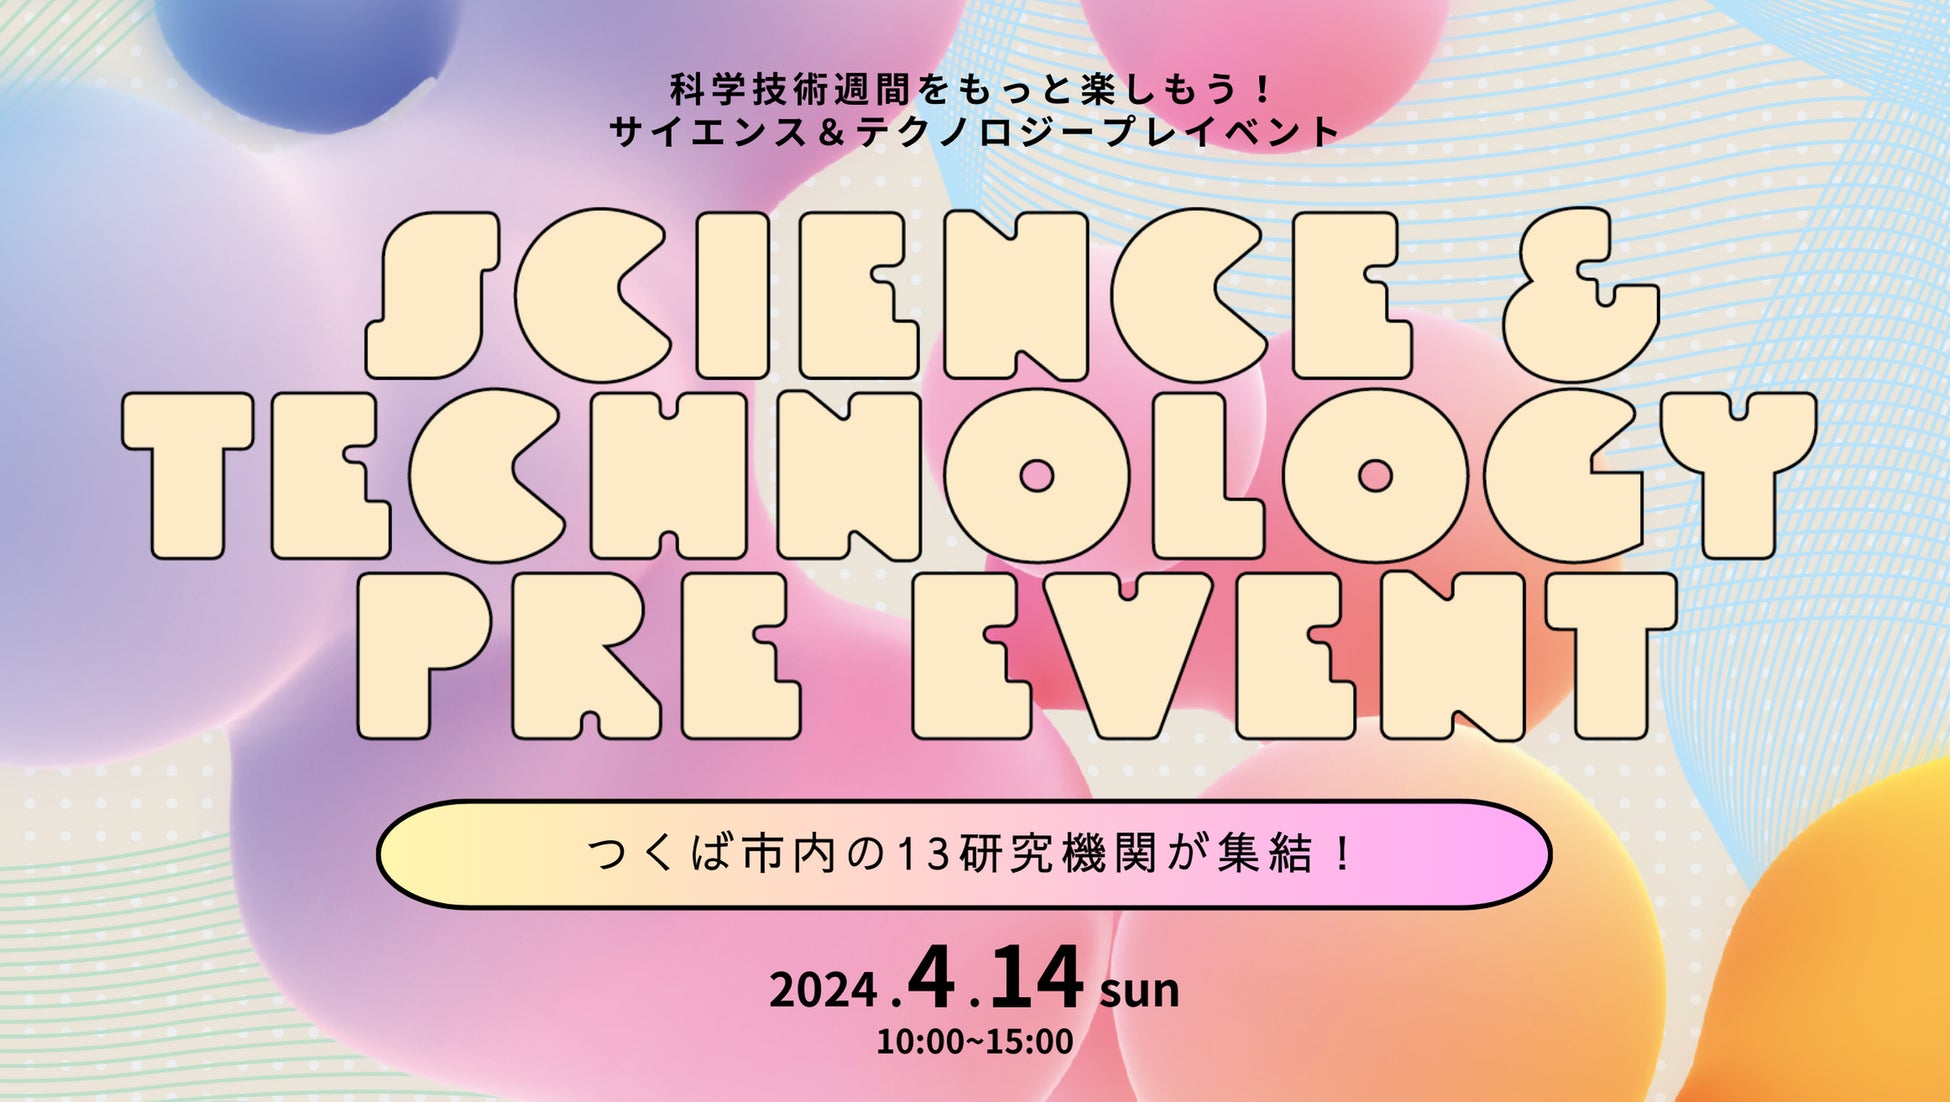 科学技術で未来を拓く。つくばの研究機関がつくばセンター広場に集結！科学技術週間プレイベント『 SCIENCE & TECHNOLOGY PRE EVENT 2024』4月14日に開催！